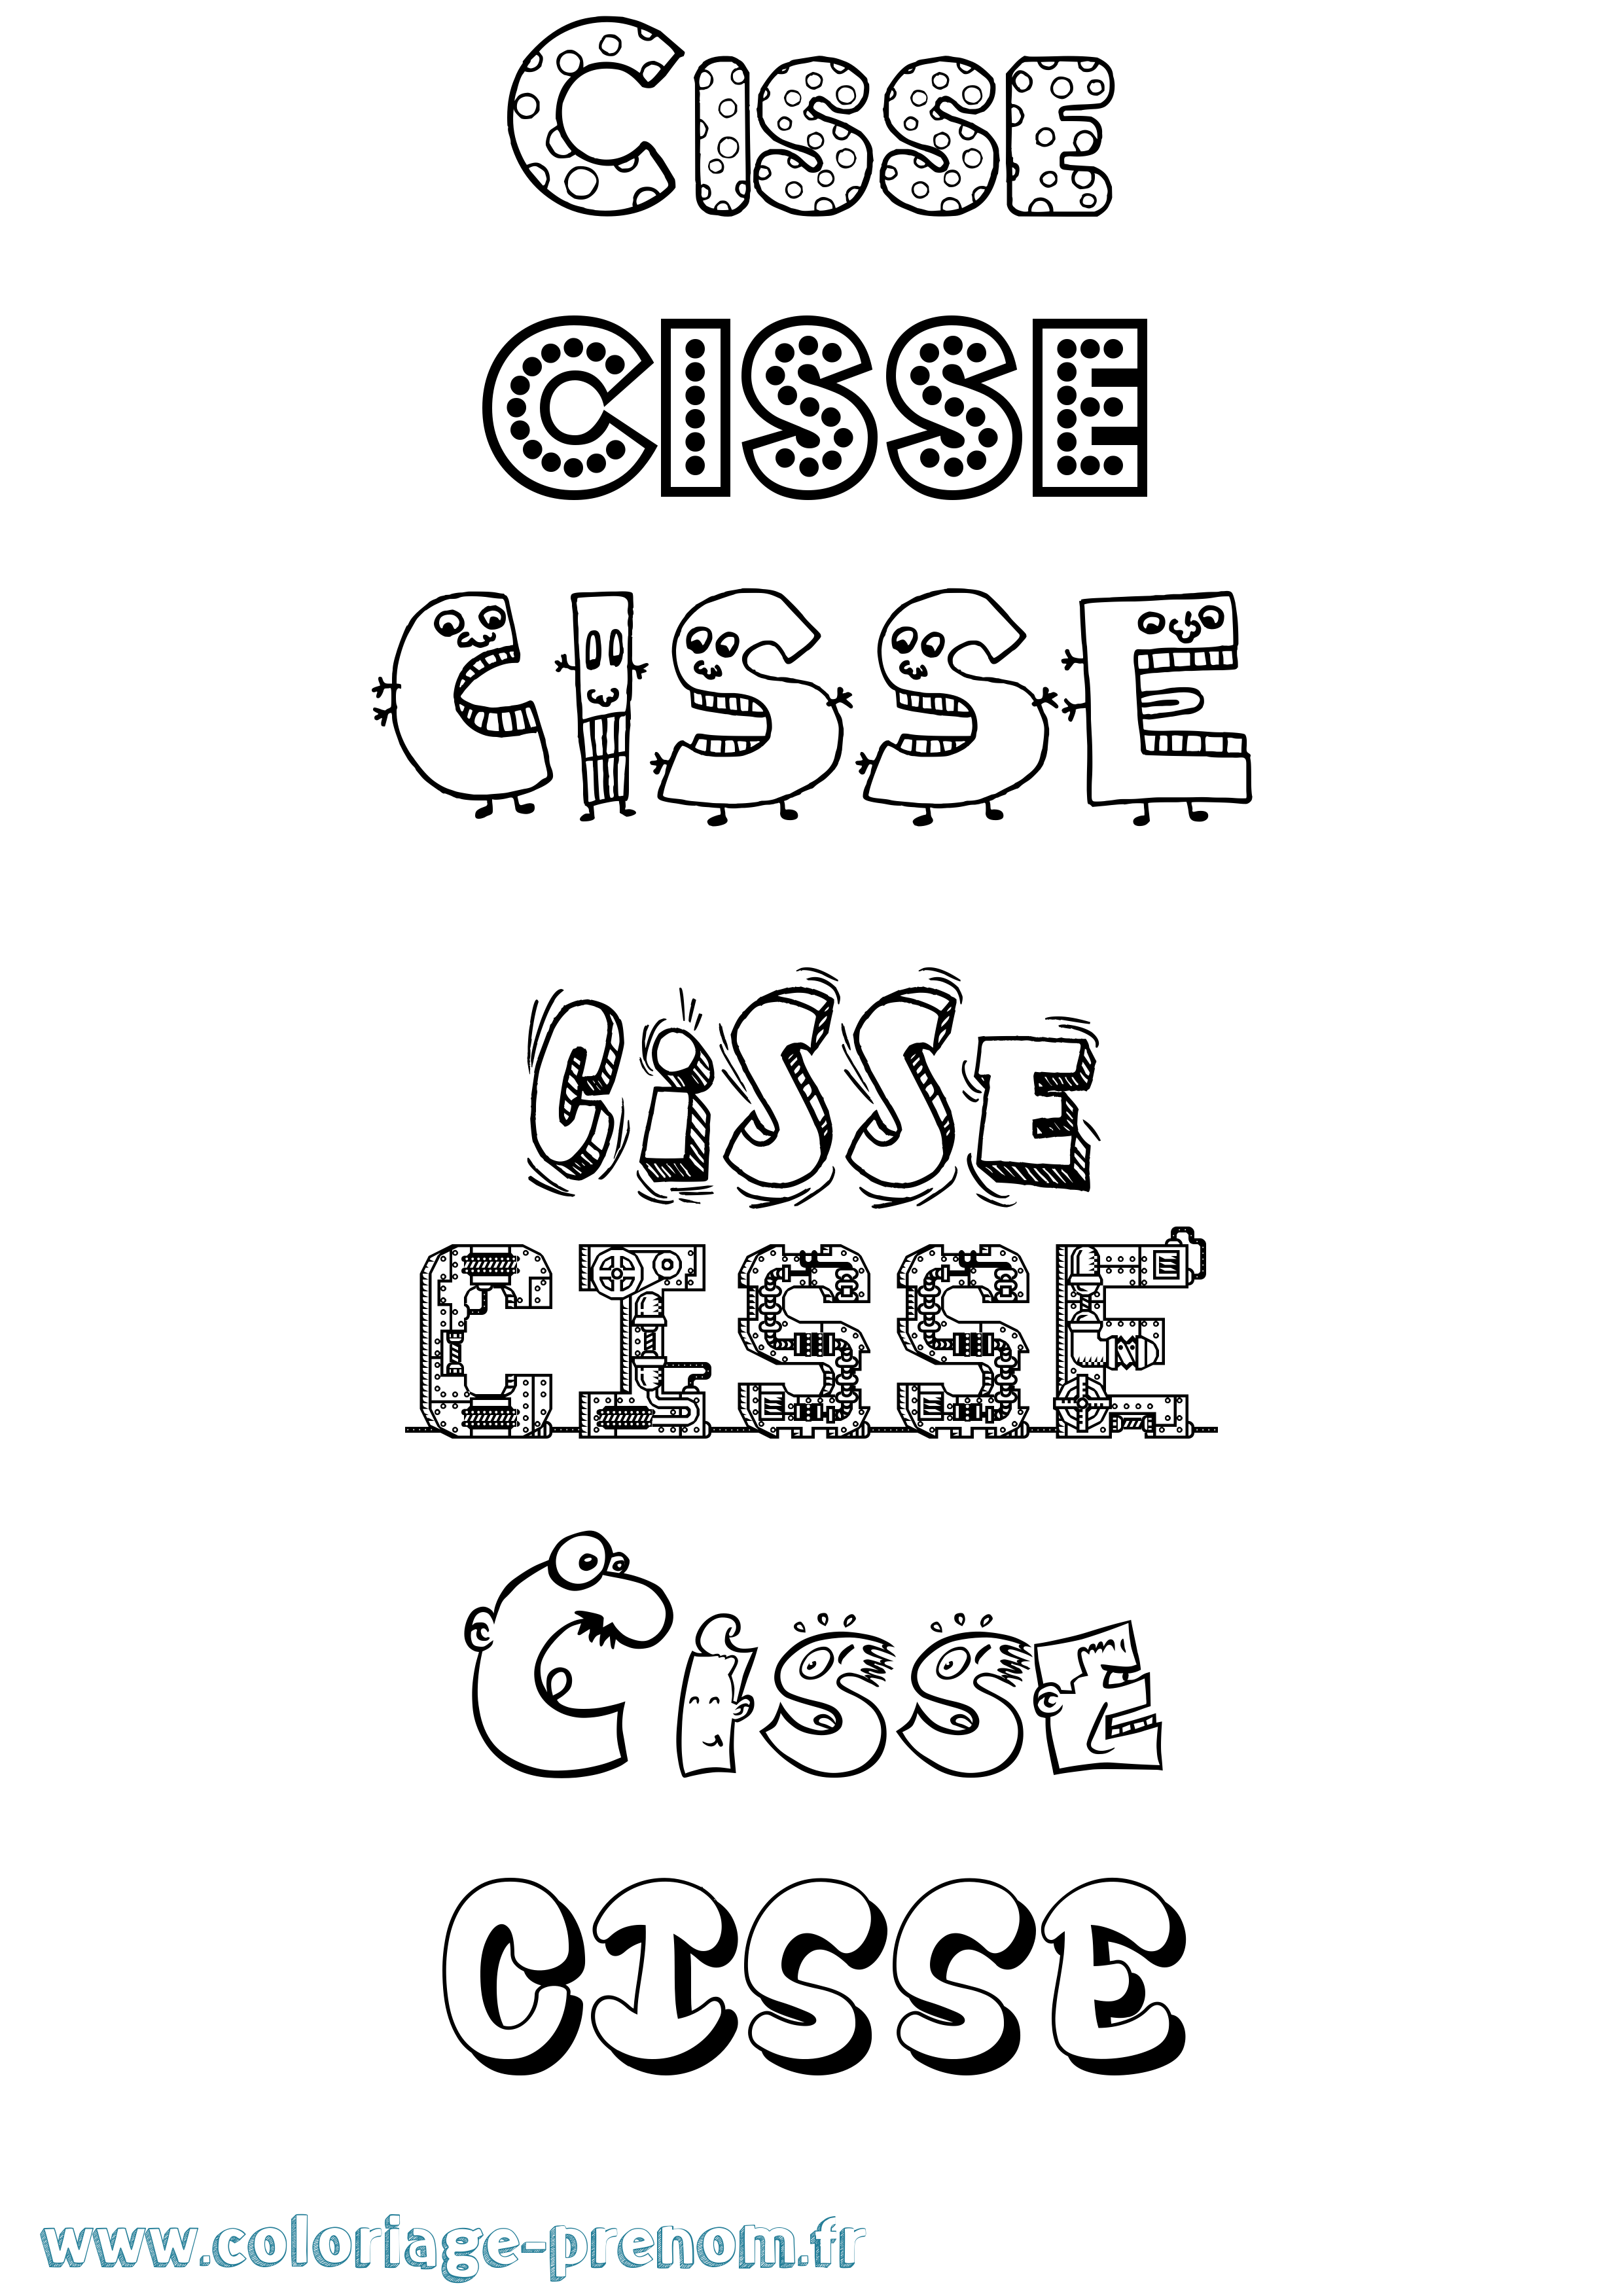 Coloriage prénom Cisse Fun